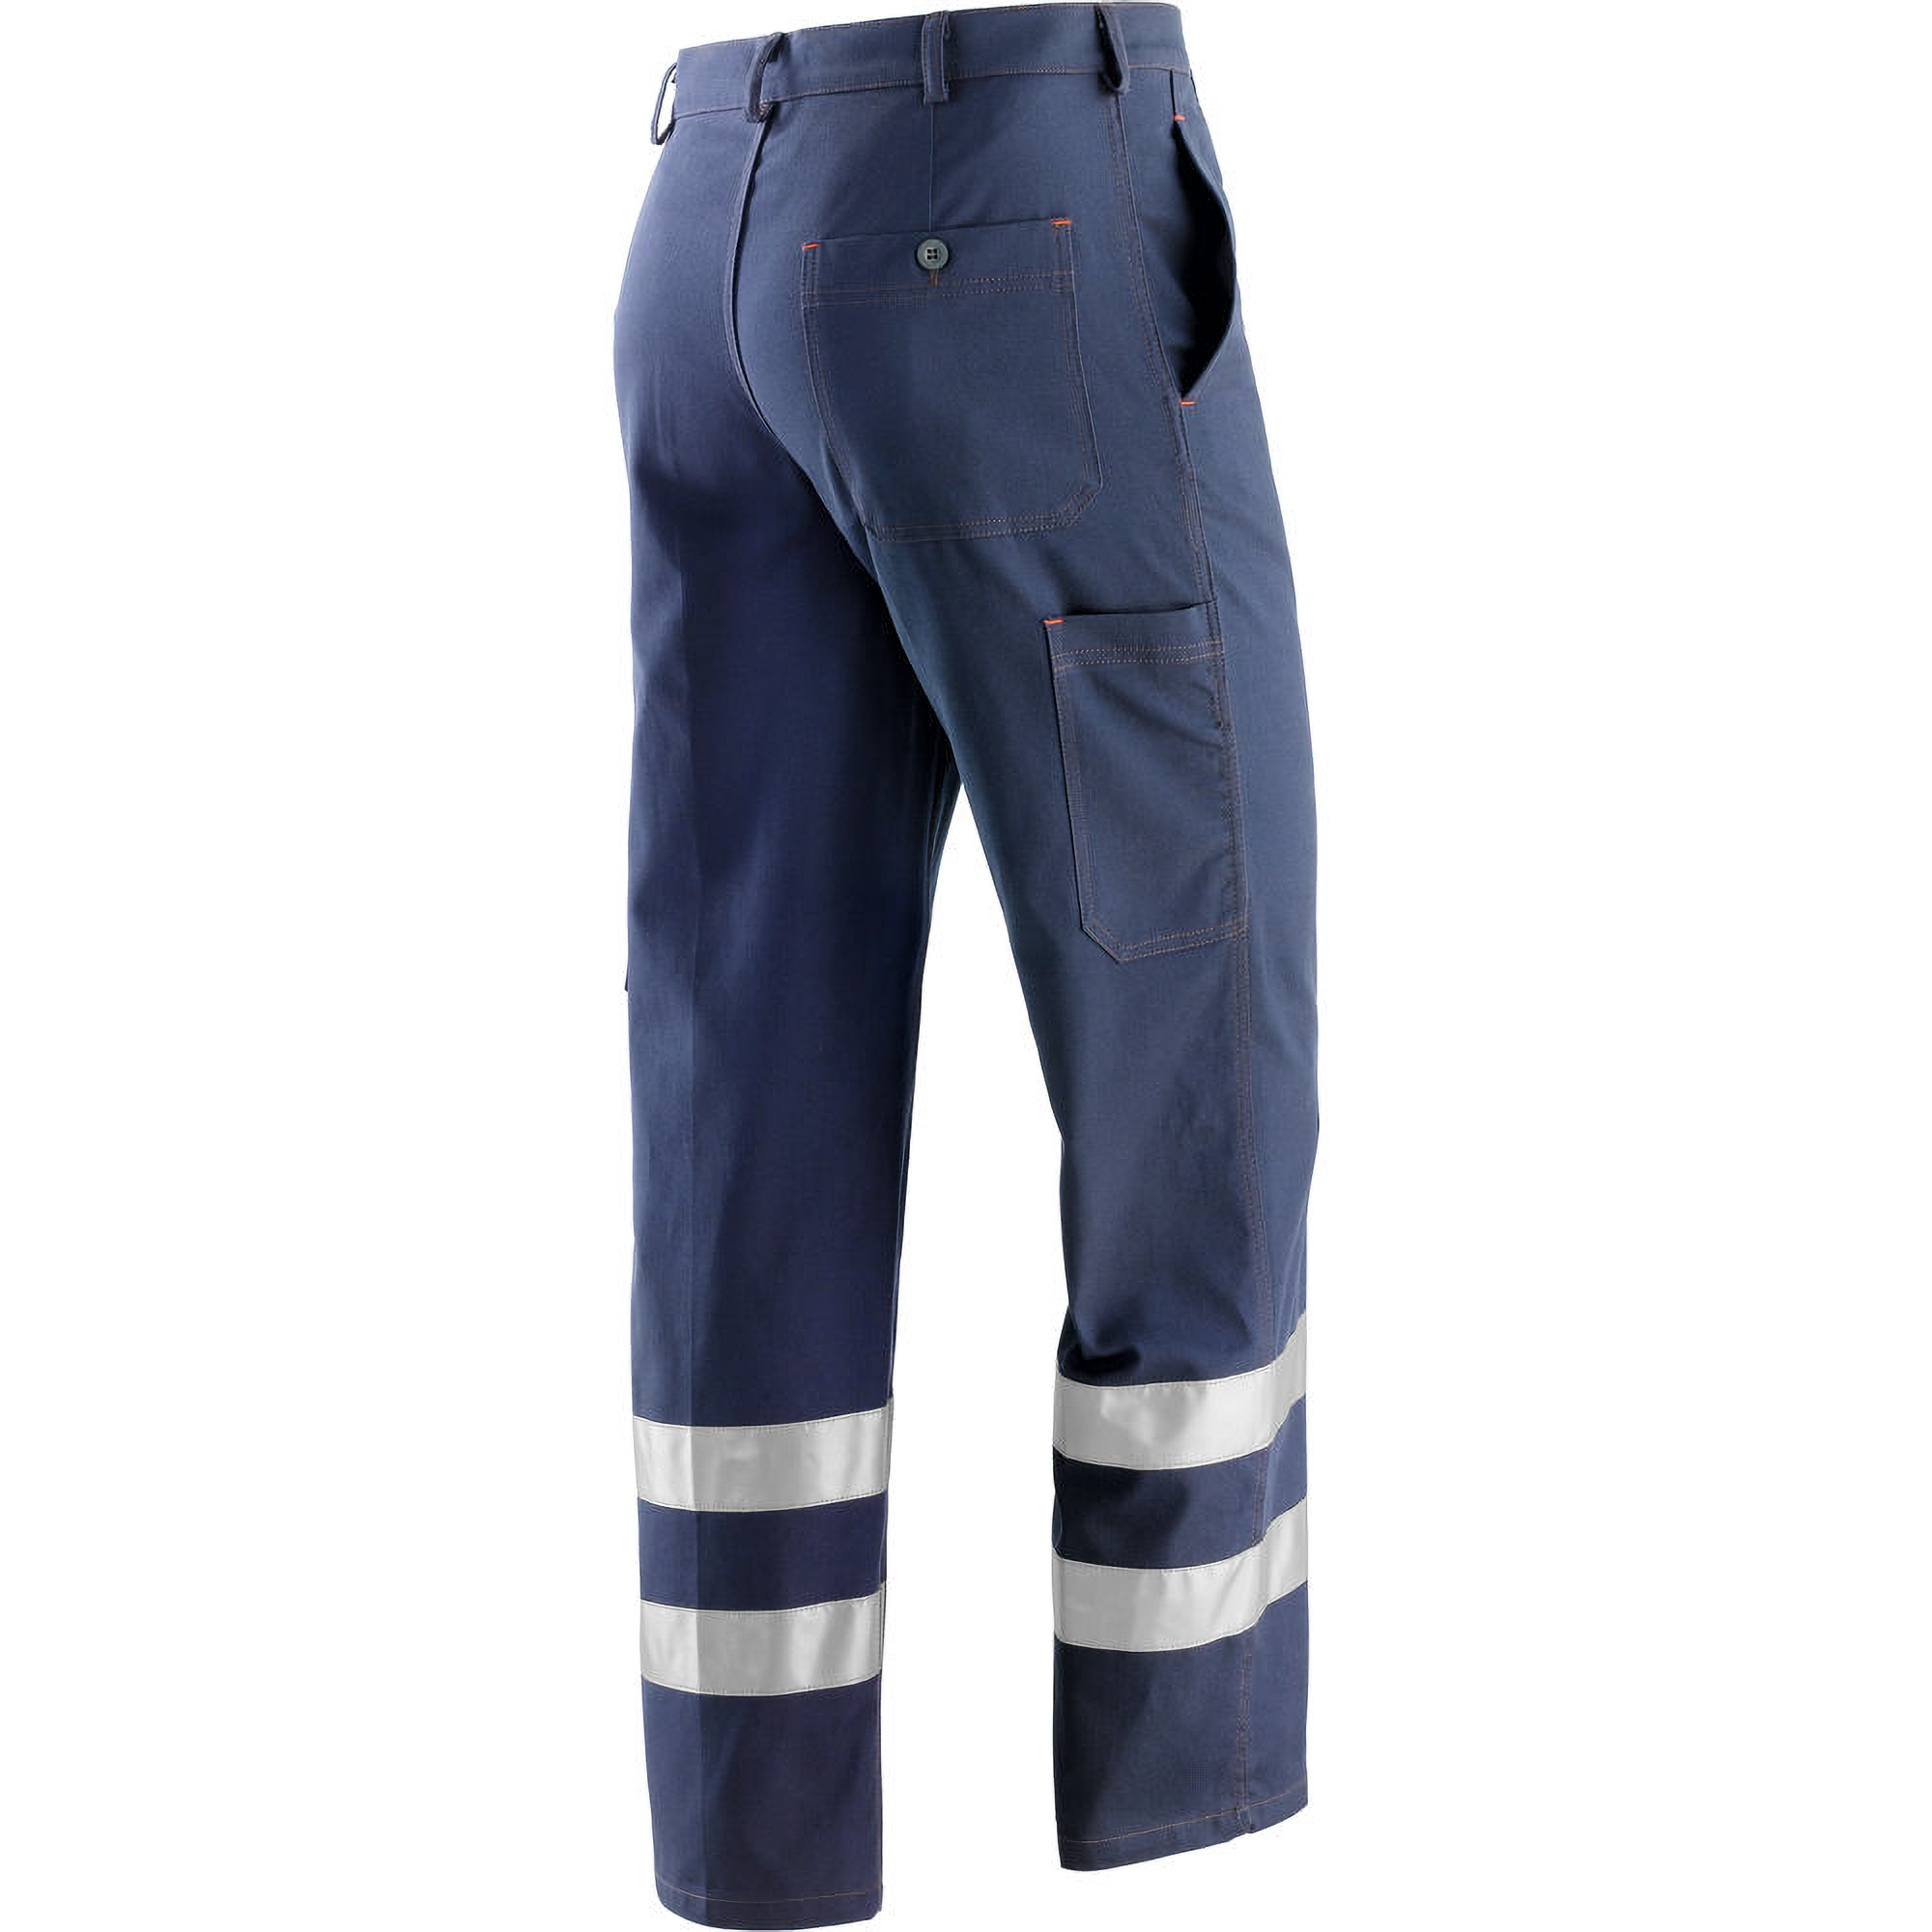 Pantaloni Neri Spa 435230 Super Blu, sicurezza sul lavoro